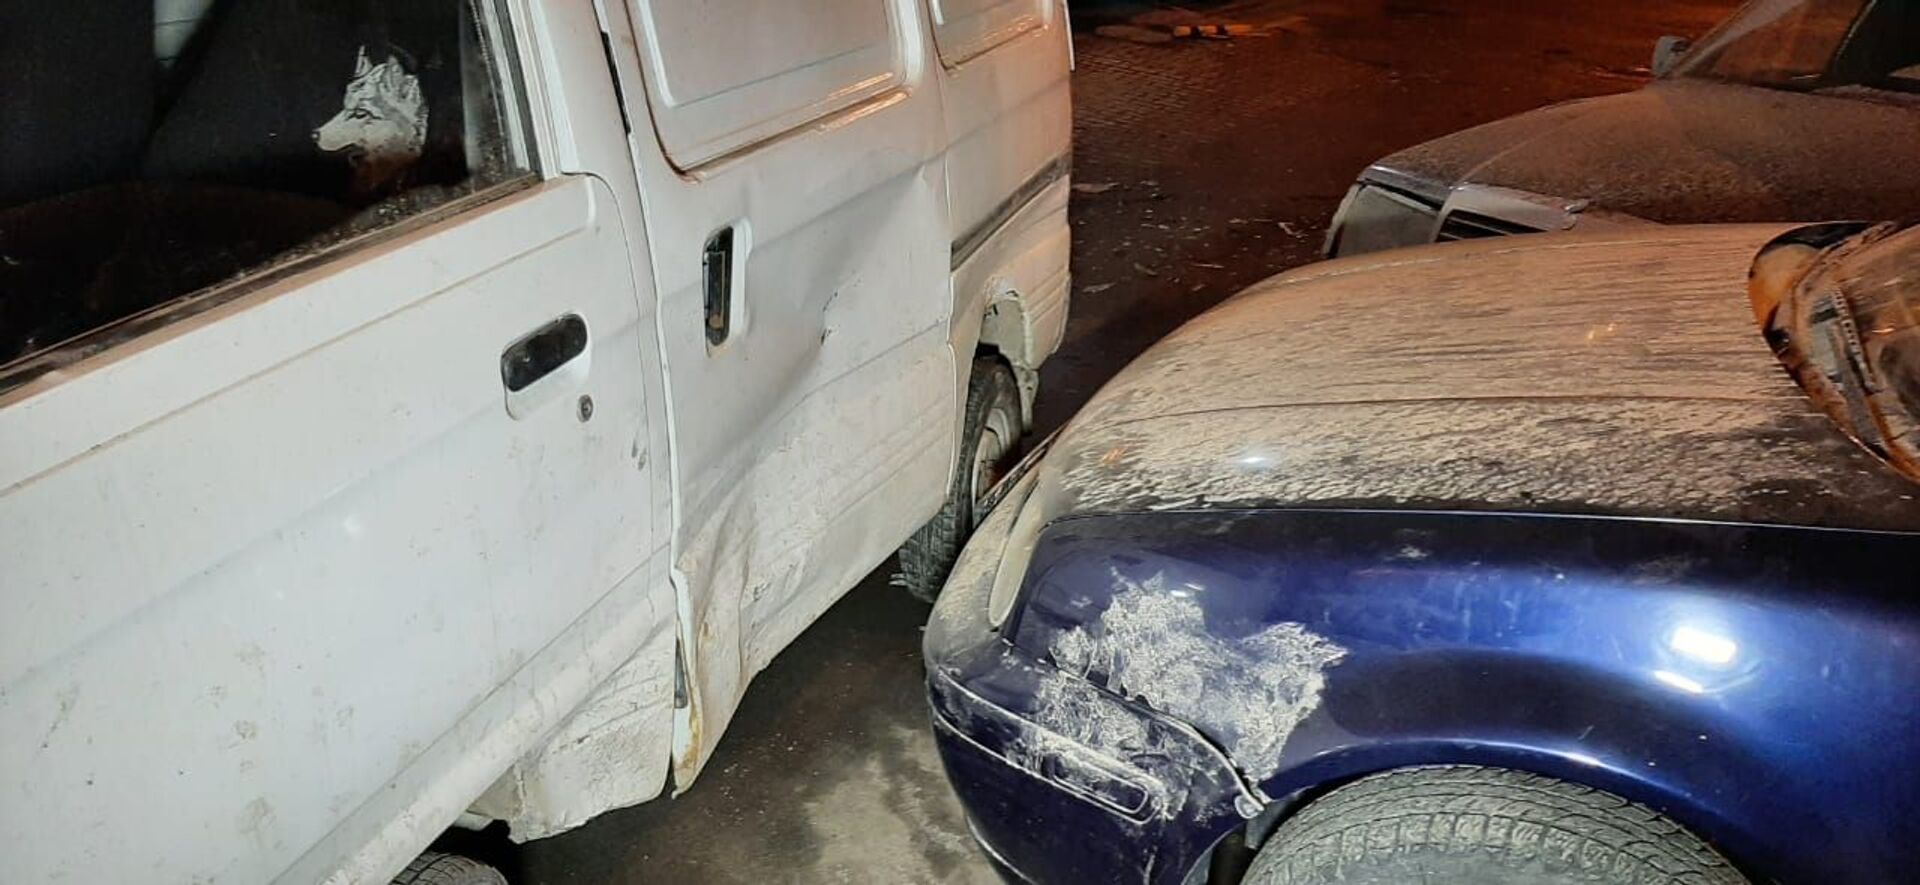 Цепное ДТП с участием четырех авто произошло в Алматы: водитель пытался сбежать - Sputnik Казахстан, 1920, 02.03.2021